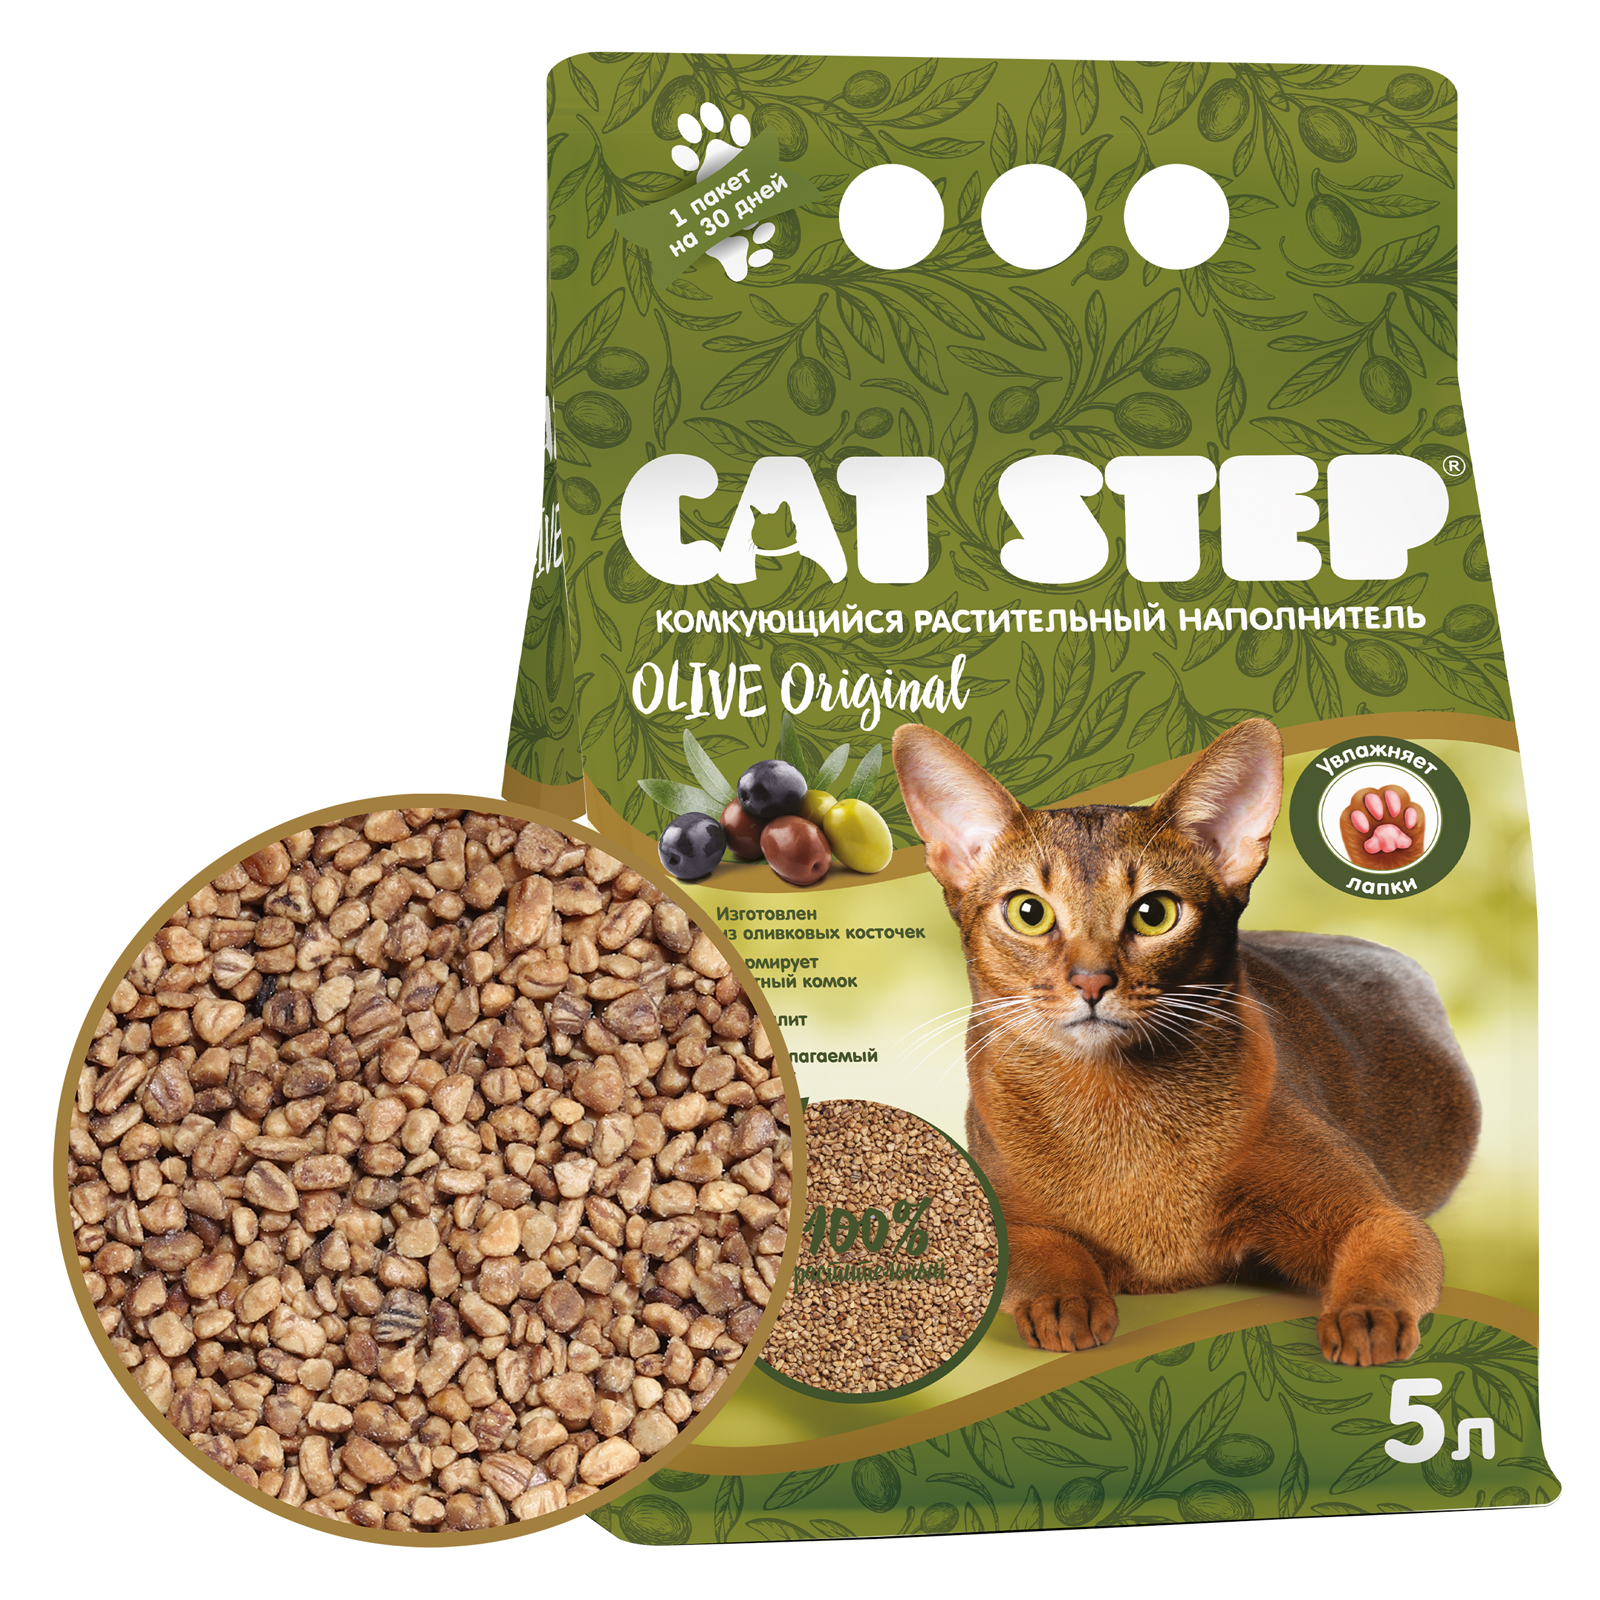 Наполнитель для кошек Cat Step Olive Original комкующийся растительный 5л - фото 2